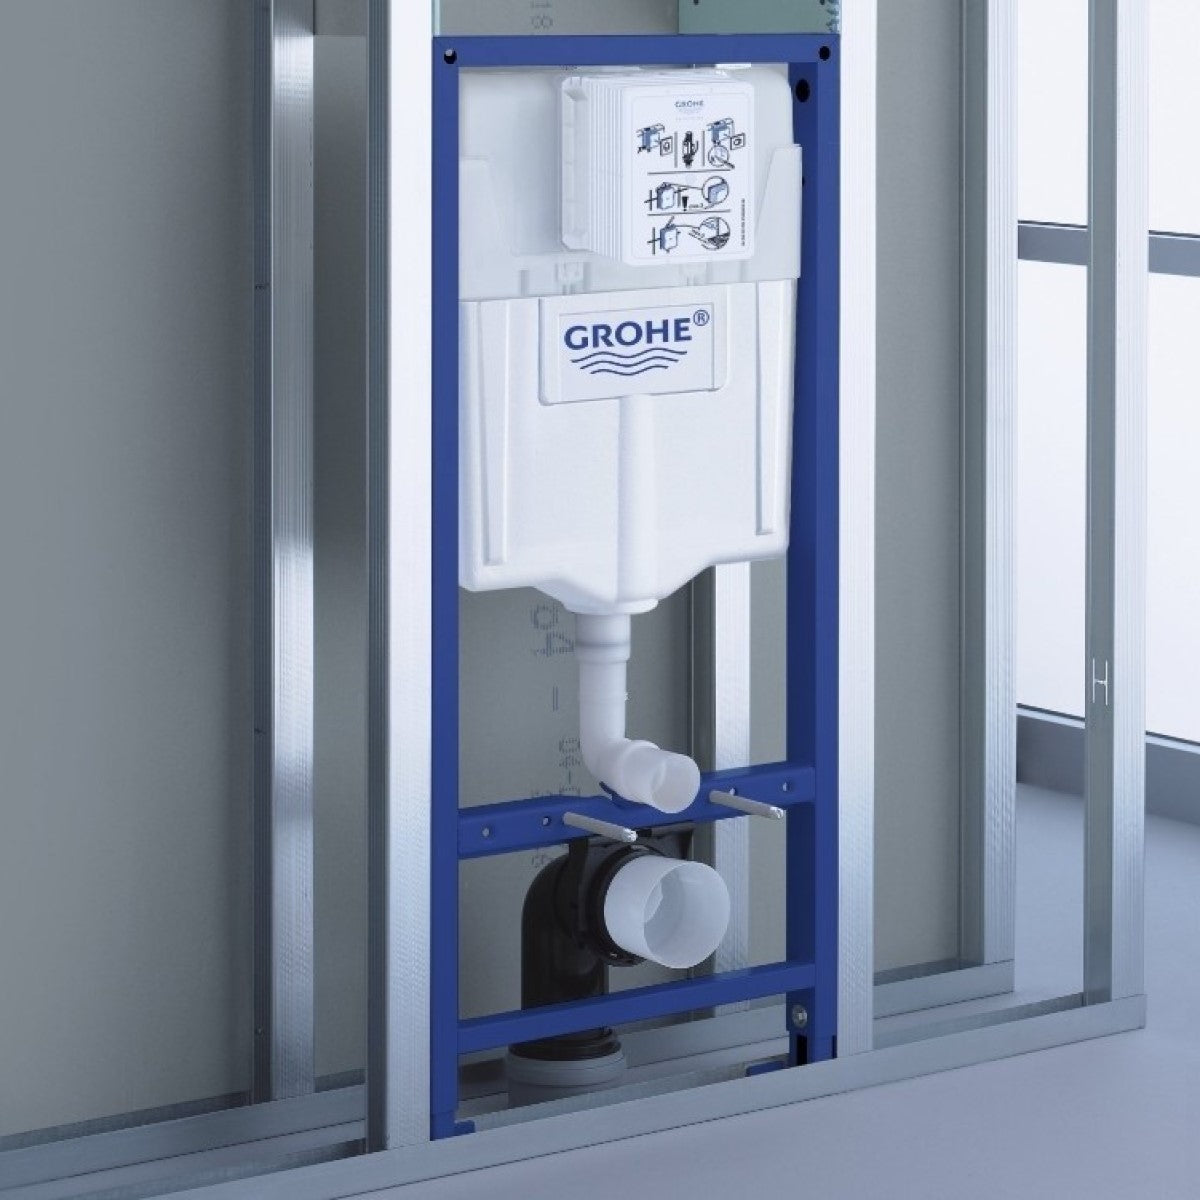 Podometni splakovalniki 38528001 Grohe Rapid SL podometni splakovalnik za WC školjko | KOPALNICA-ONLINE.SI